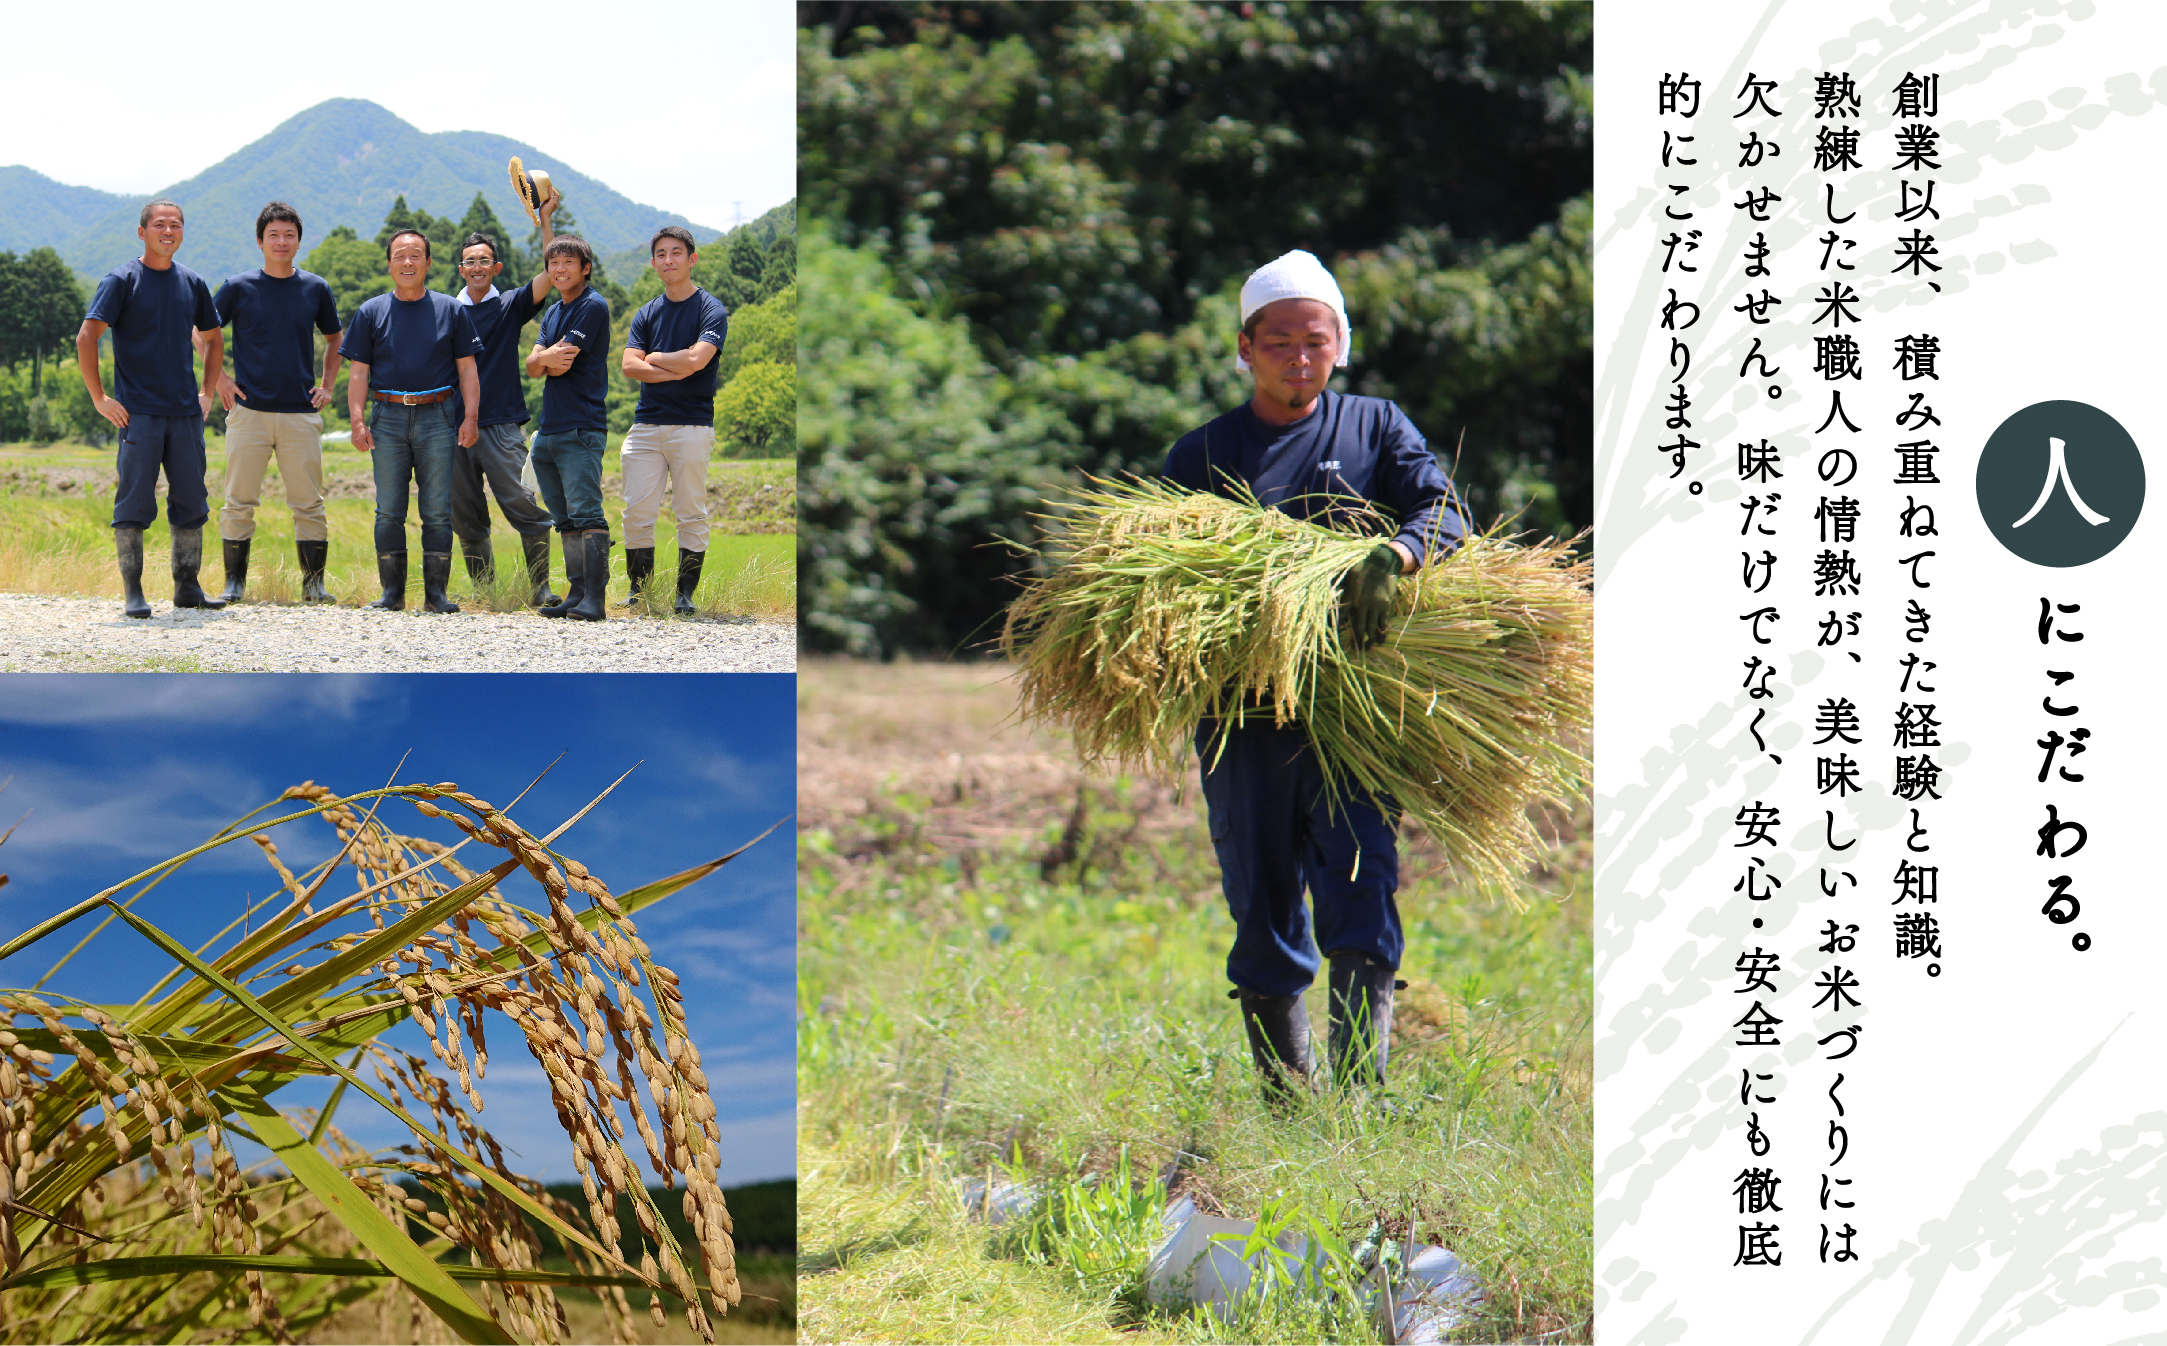 【定期便】山里清流米こしひかり玄米 5kg×12回（毎月）  120015